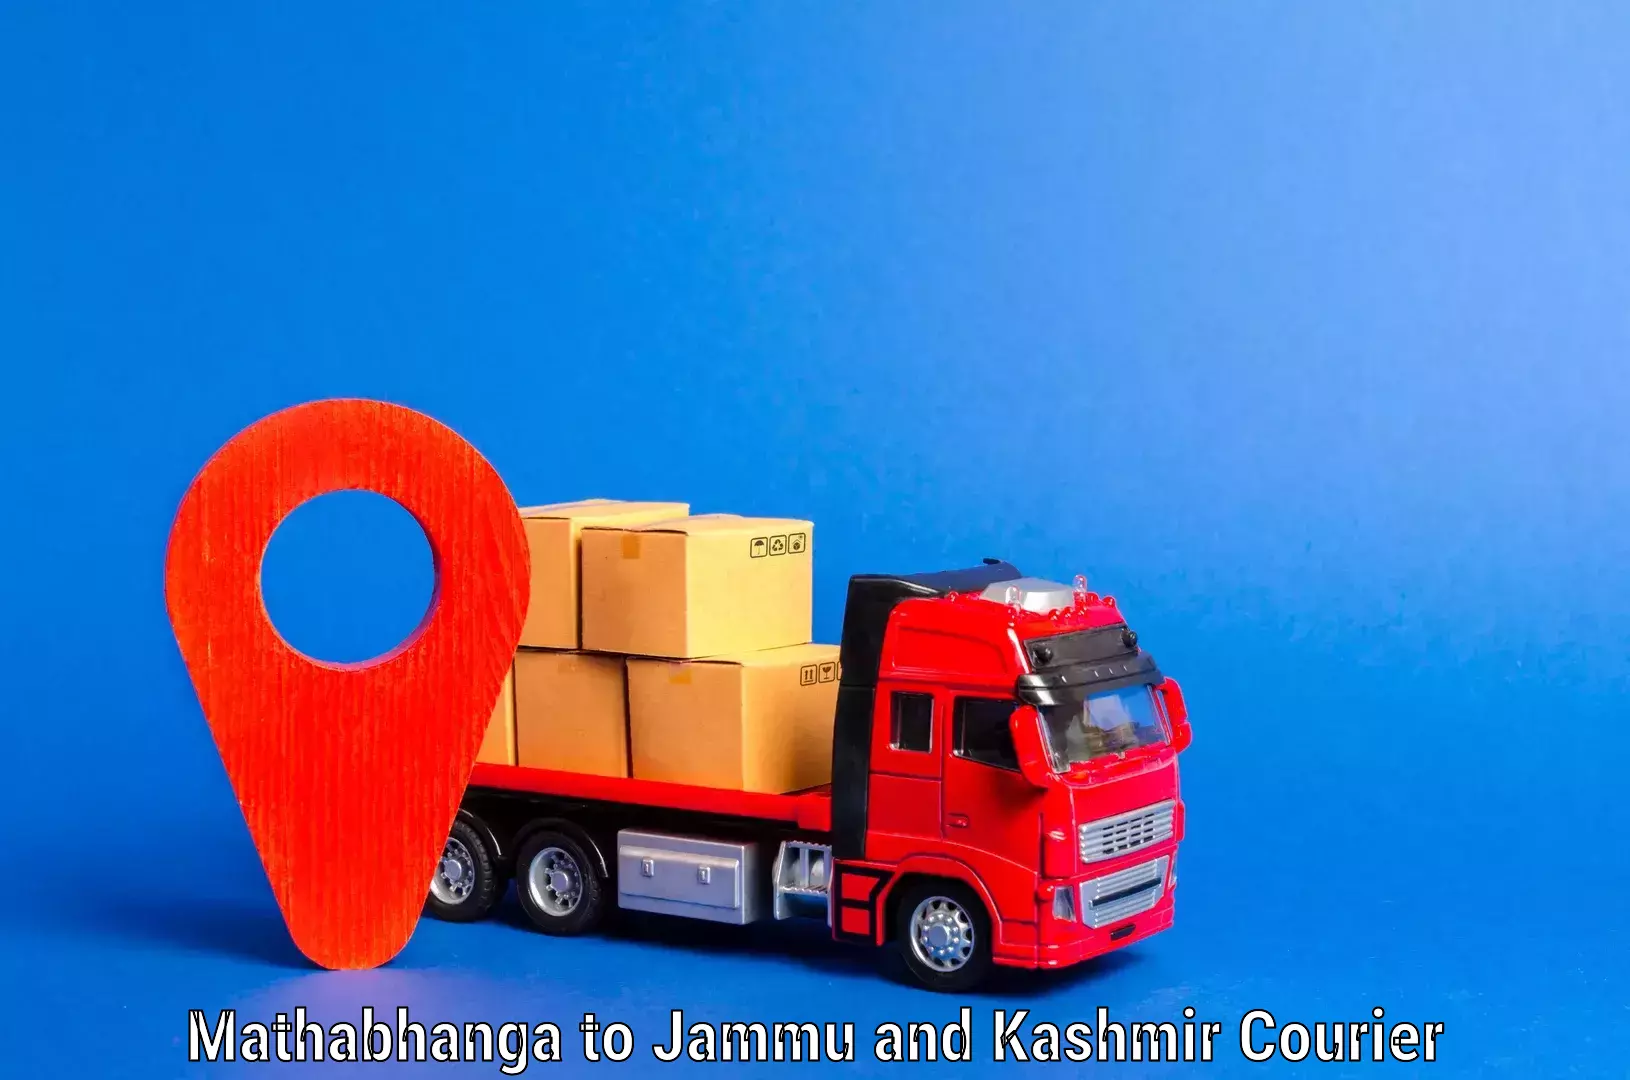 Professional movers Mathabhanga to Jammu and Kashmir